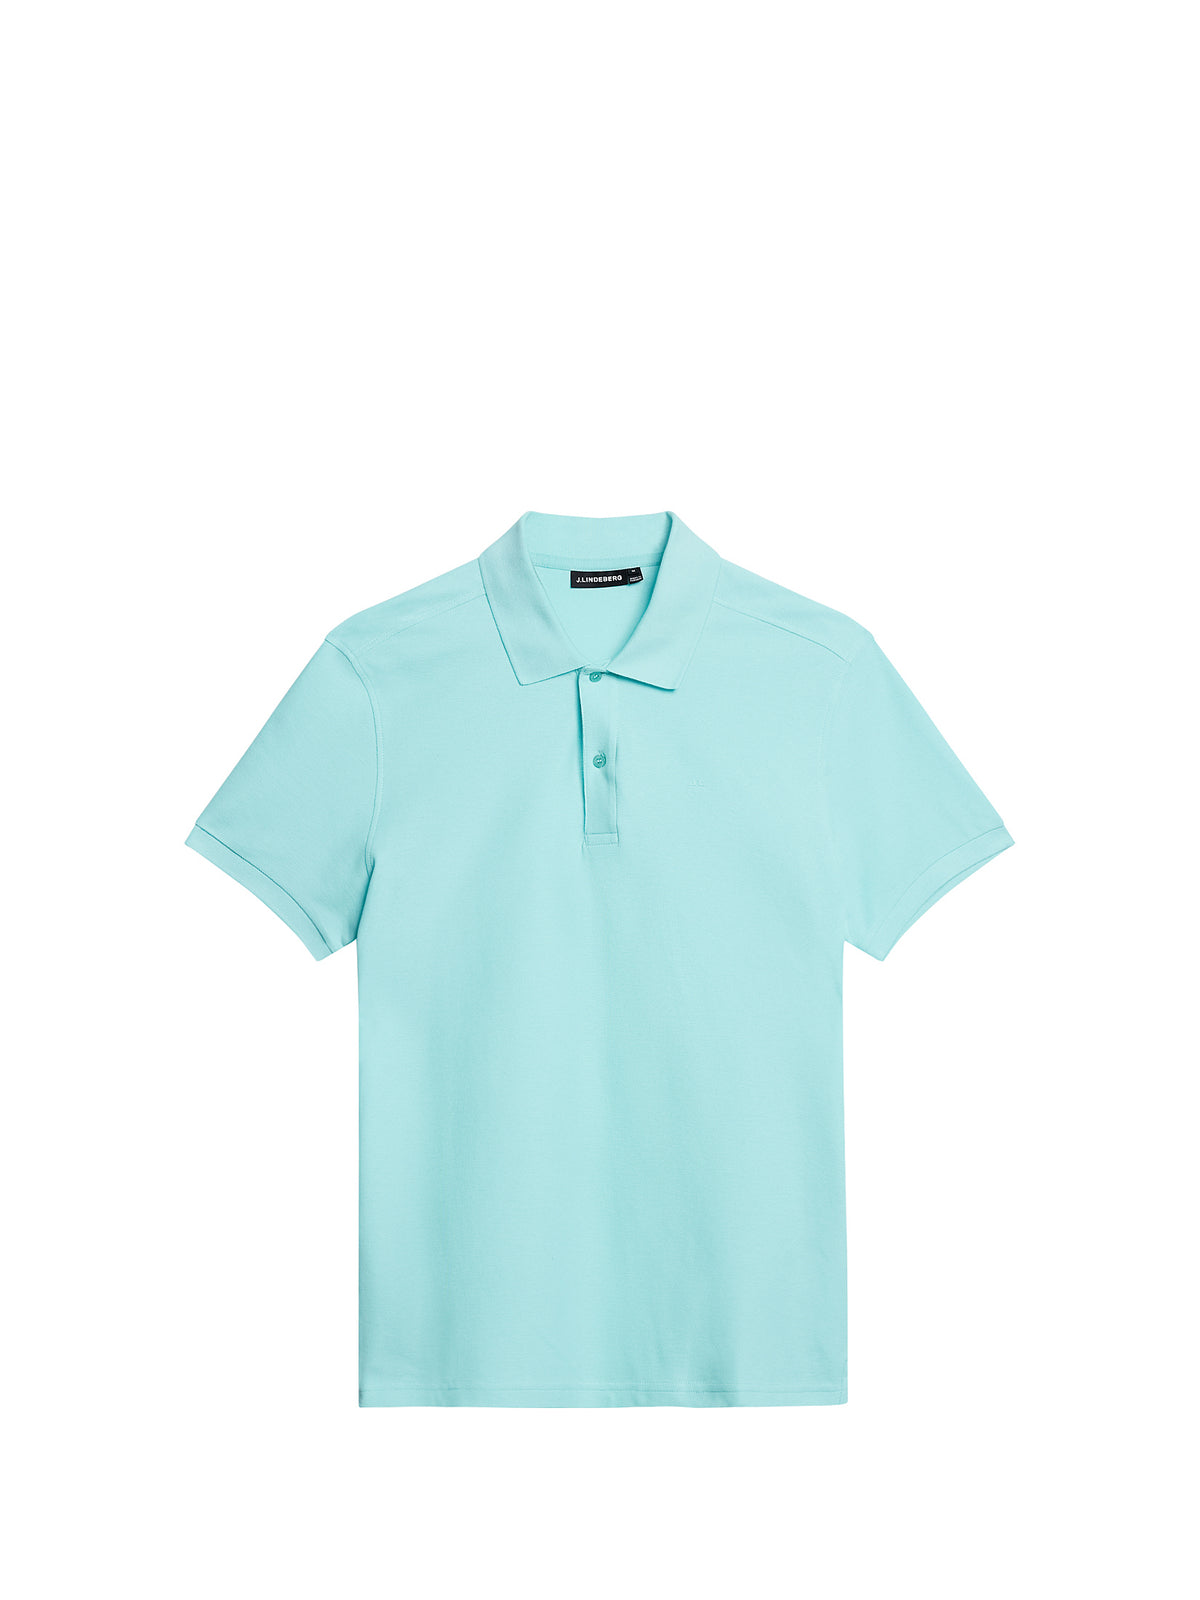 Troy Polo shirt / Aqua Splash